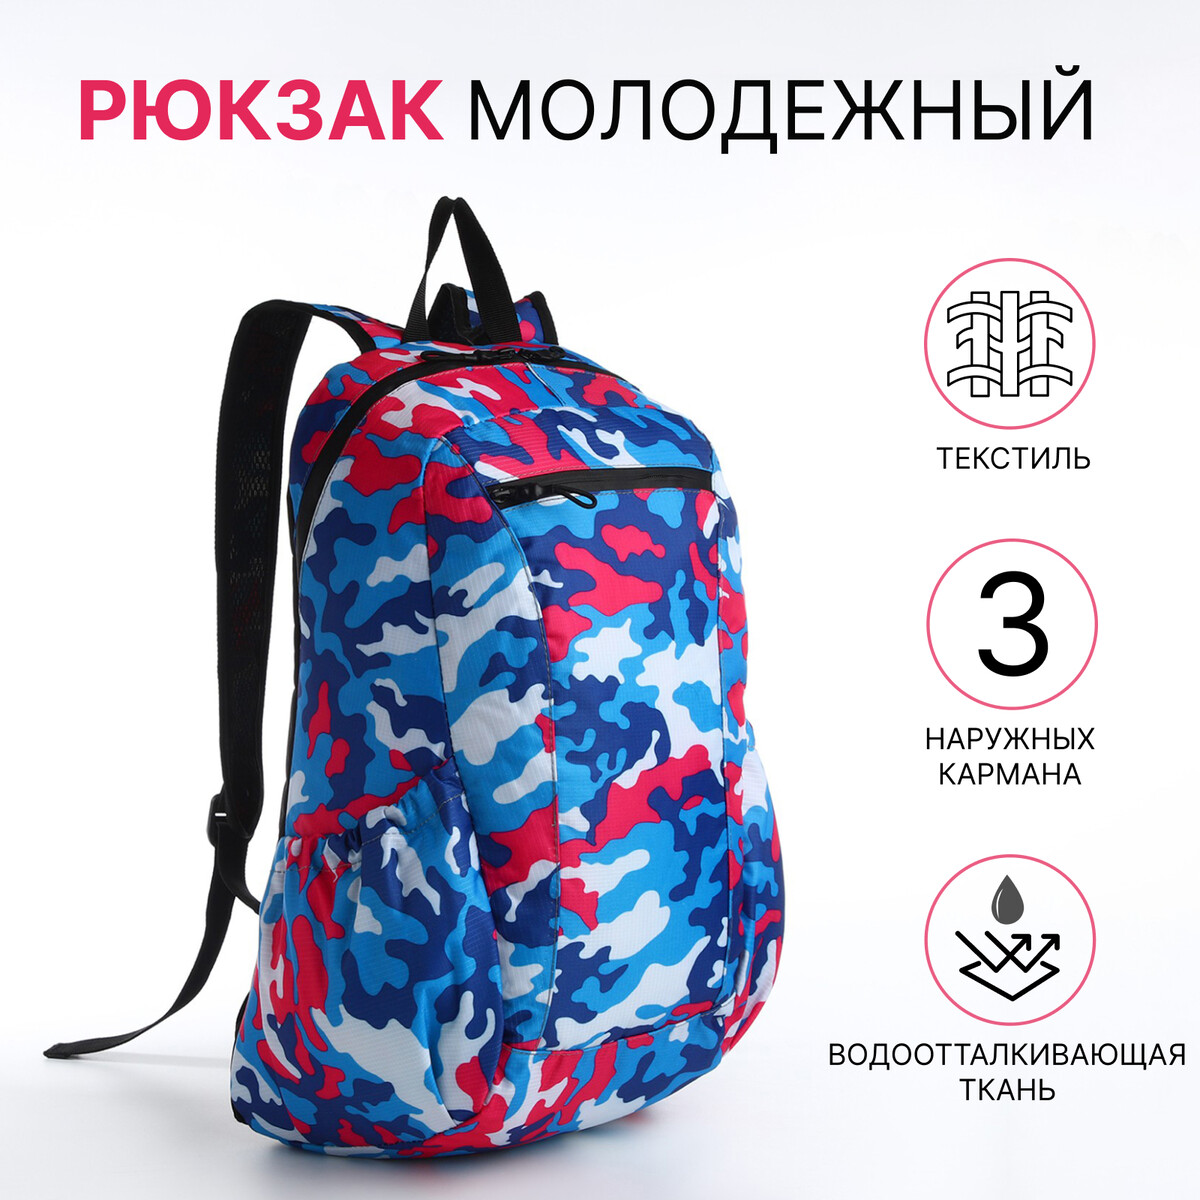 Рюкзак молодежный, водонепроницаемый на молнии, 3 кармана, цвет голубой/розовый